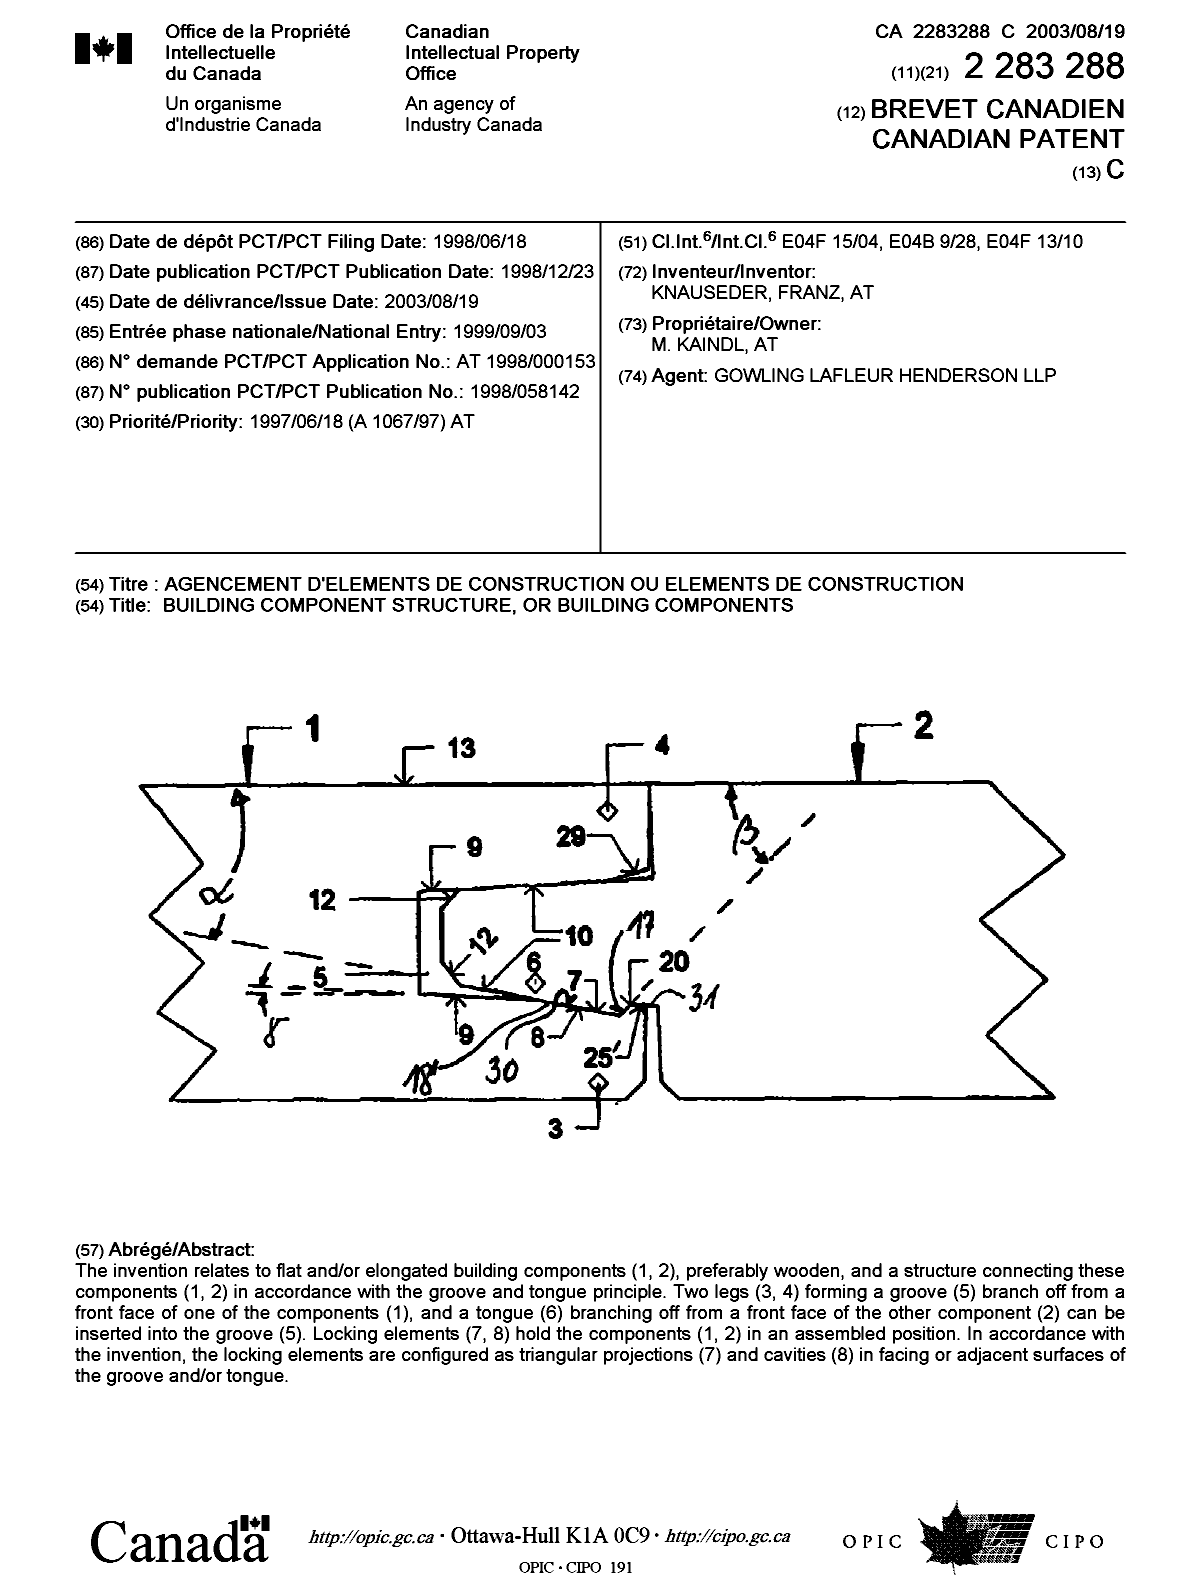 Document de brevet canadien 2283288. Page couverture 20030722. Image 1 de 1